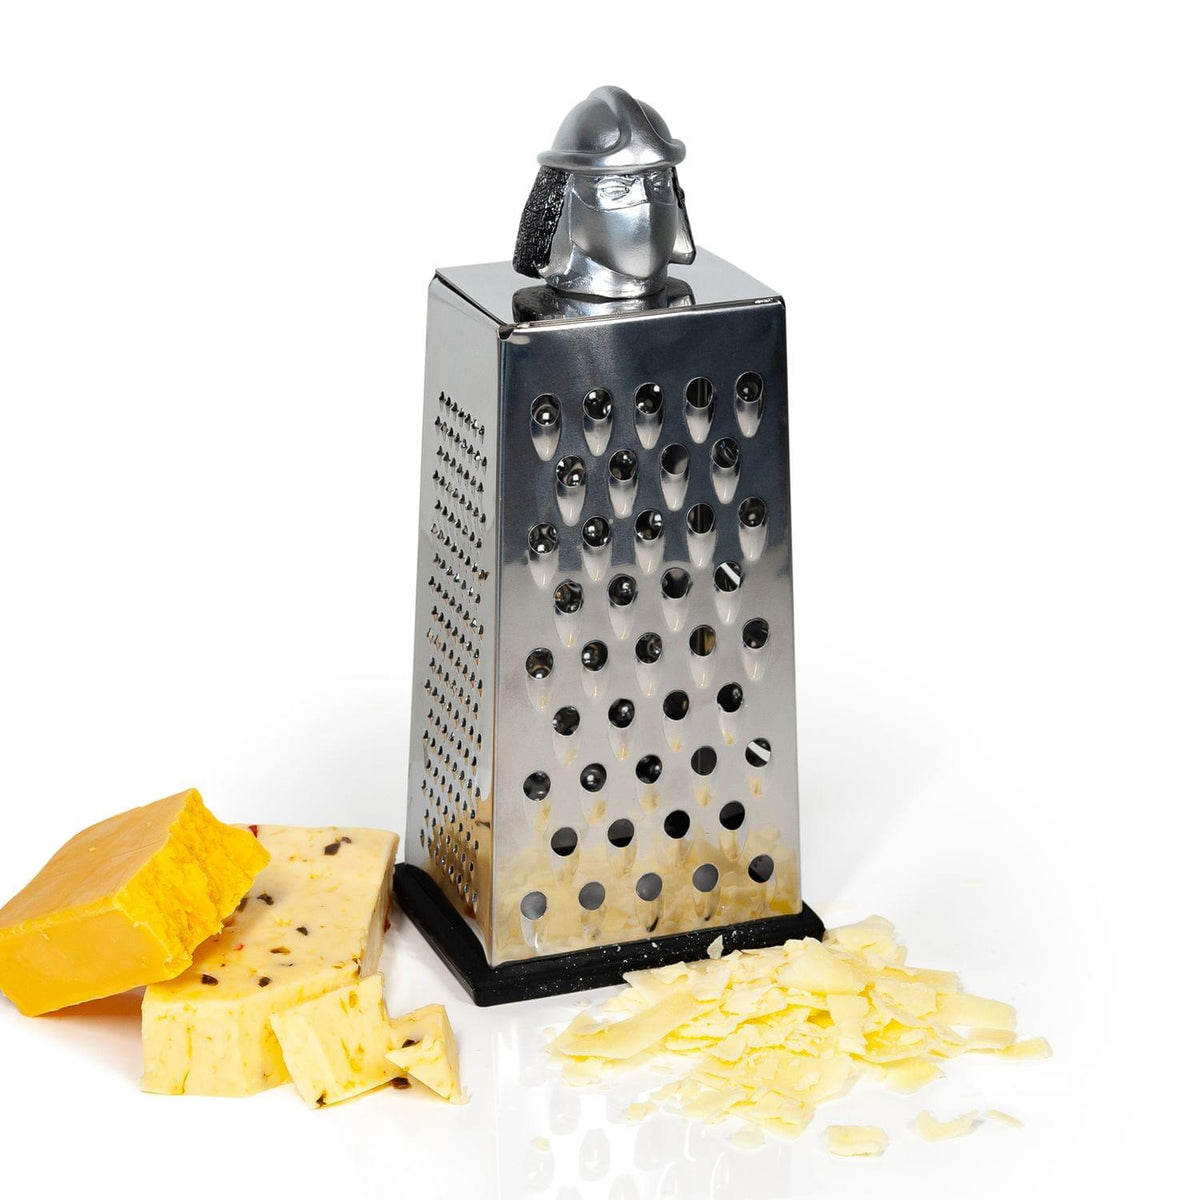 ninja cheese grater attachment｜TikTok Search